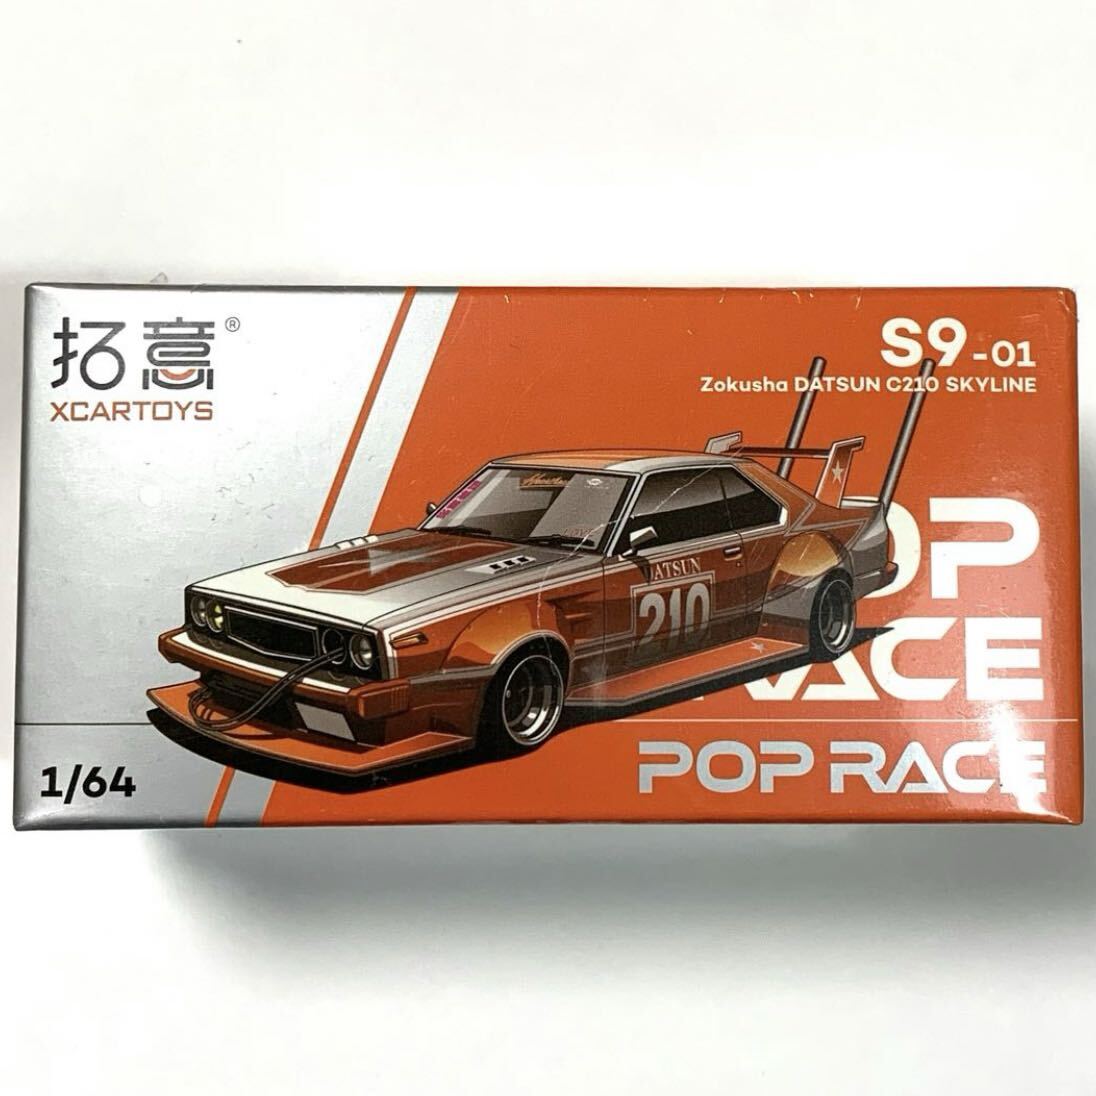 1/64 POP RACE ポップレース スカイライン C210 街道レーサー 暴走族スタイル 拓意パッケージの画像1